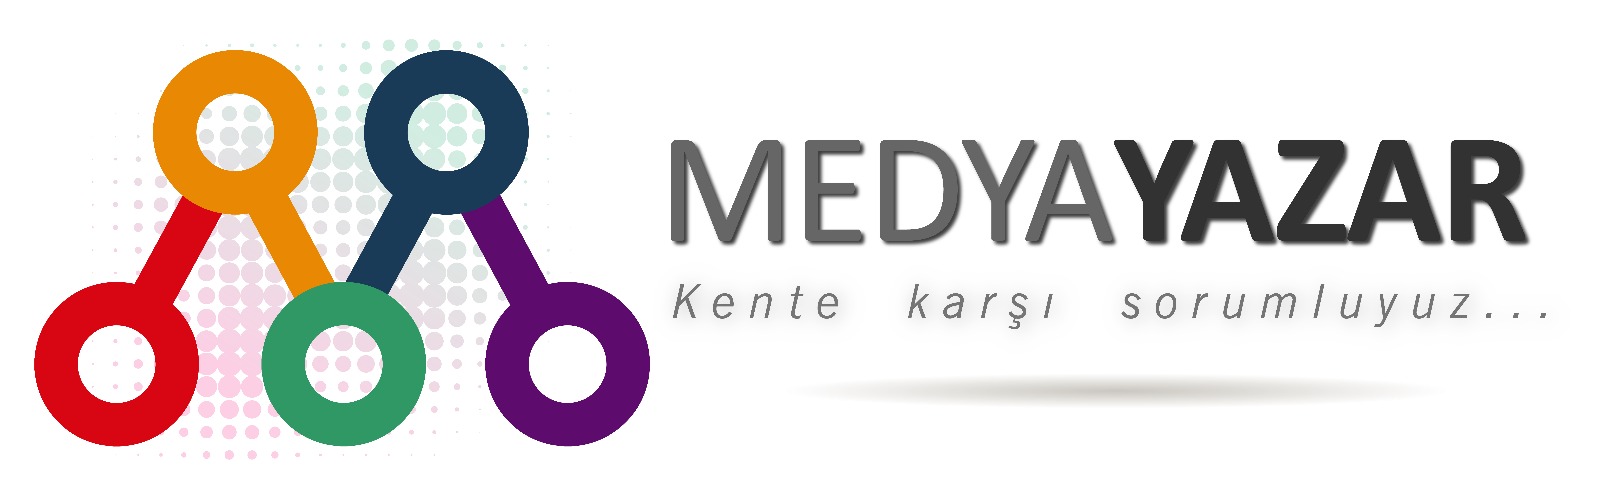 MedyaYazar